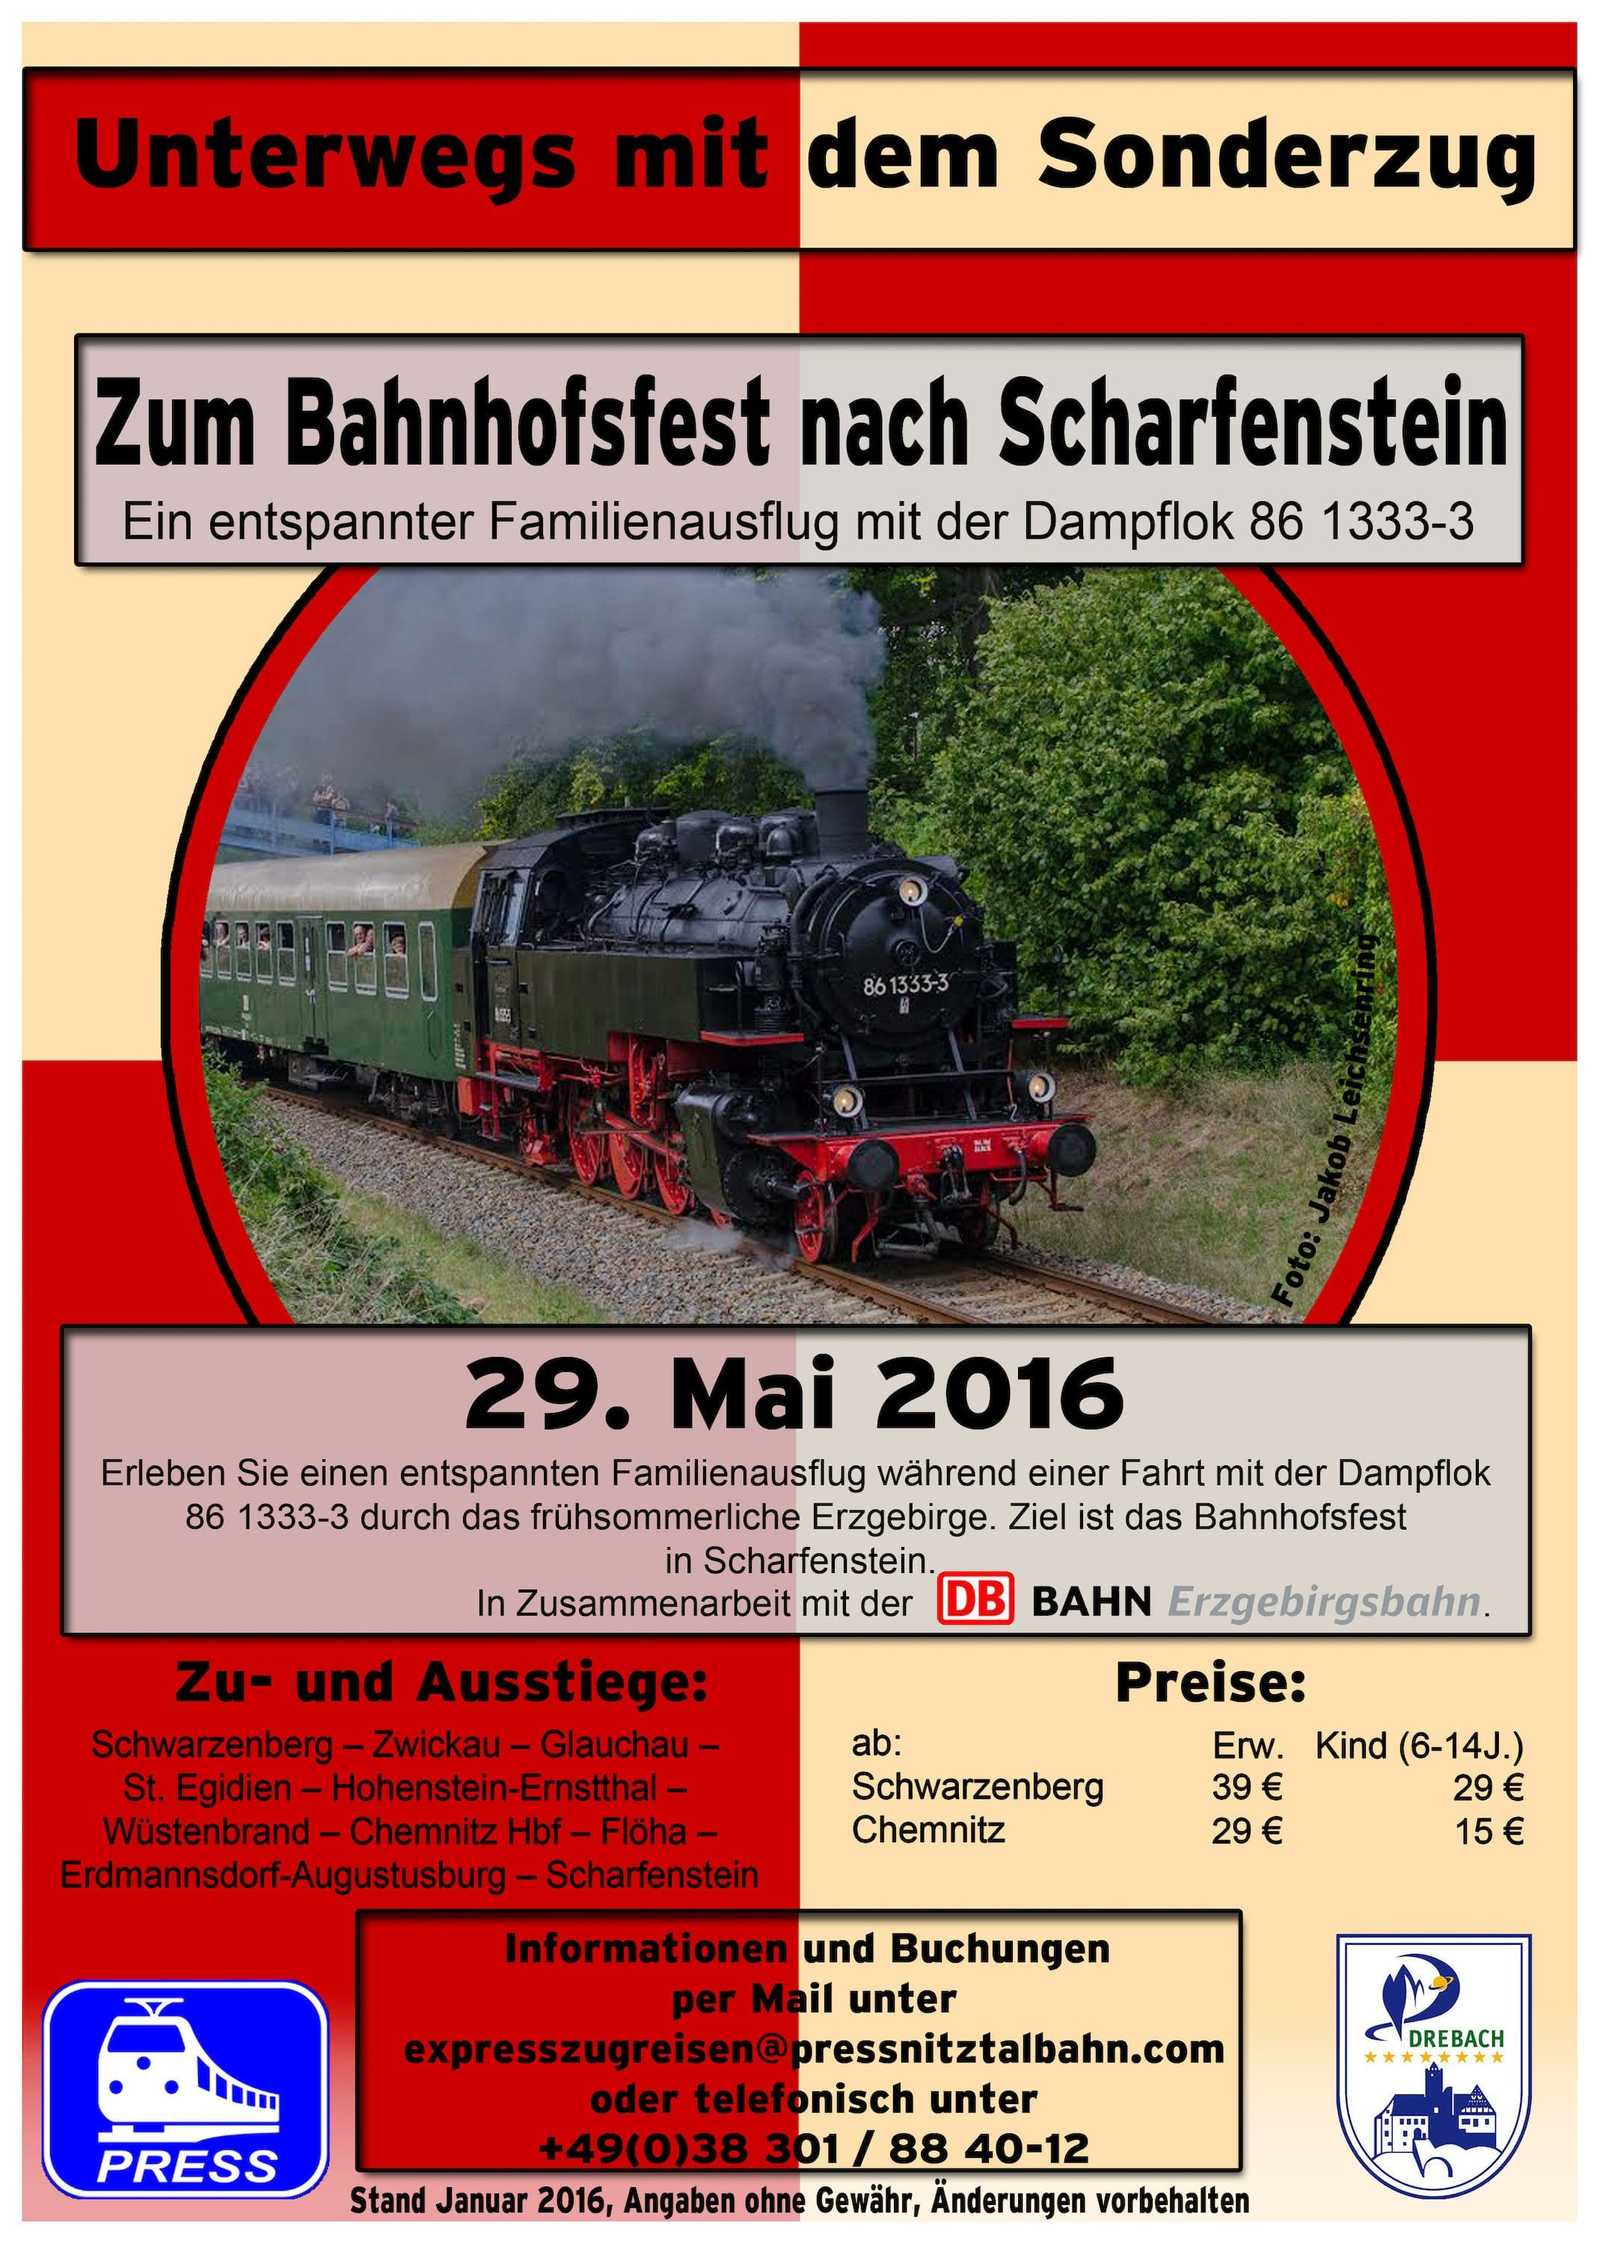 Veranstaltungsankündigung „Zum Bahnhofsfest nach Scharfenstein“